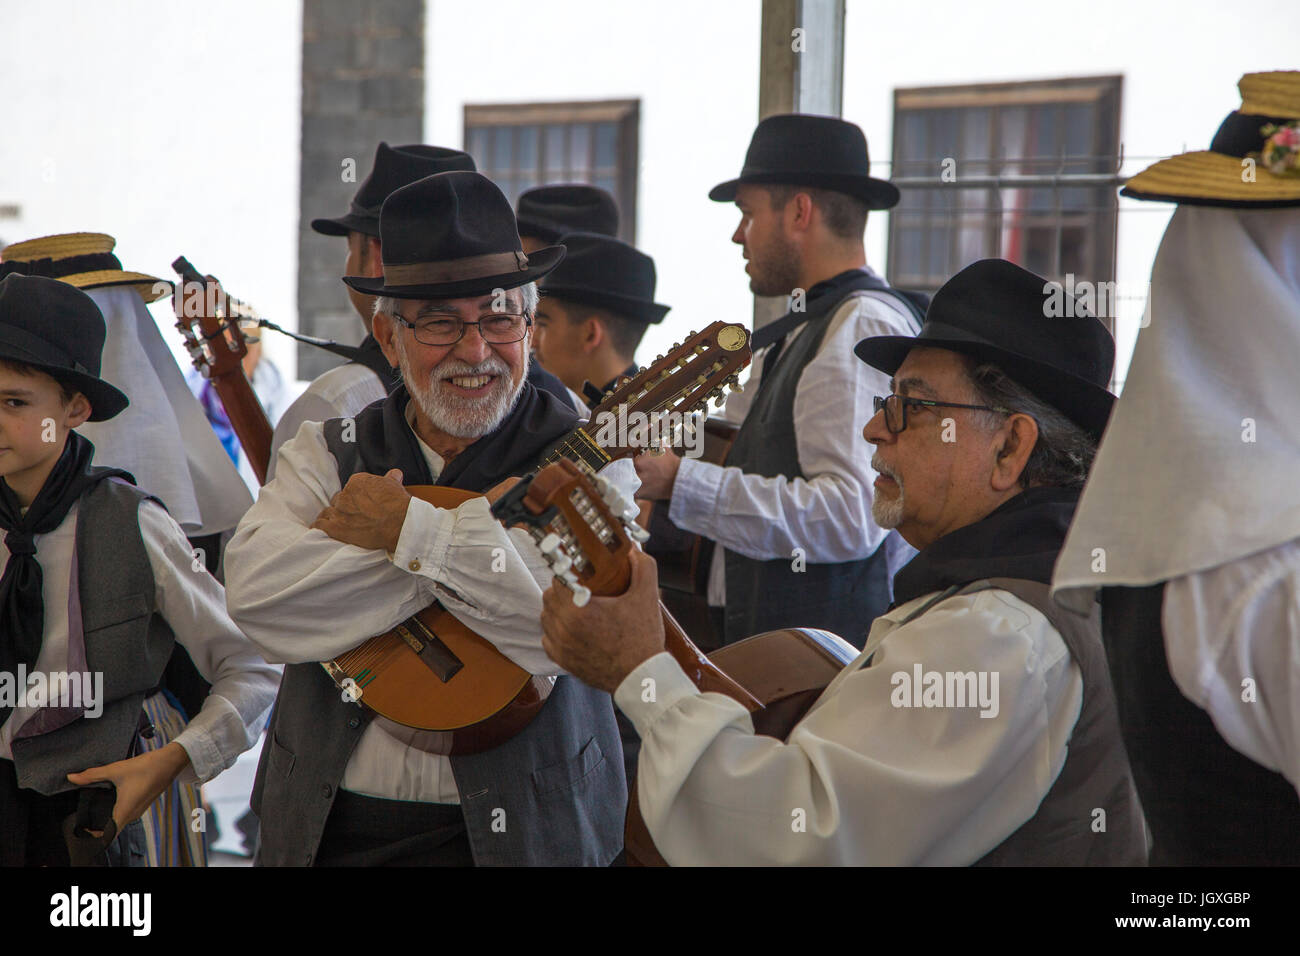 Folklore, Musiker in traditionell kanarischer Kleidung auf dem woechentlichen Sonntagsmarkt in Teguise, Lanzarote, Kanarische Inseln, Europa | Musican Stock Photo